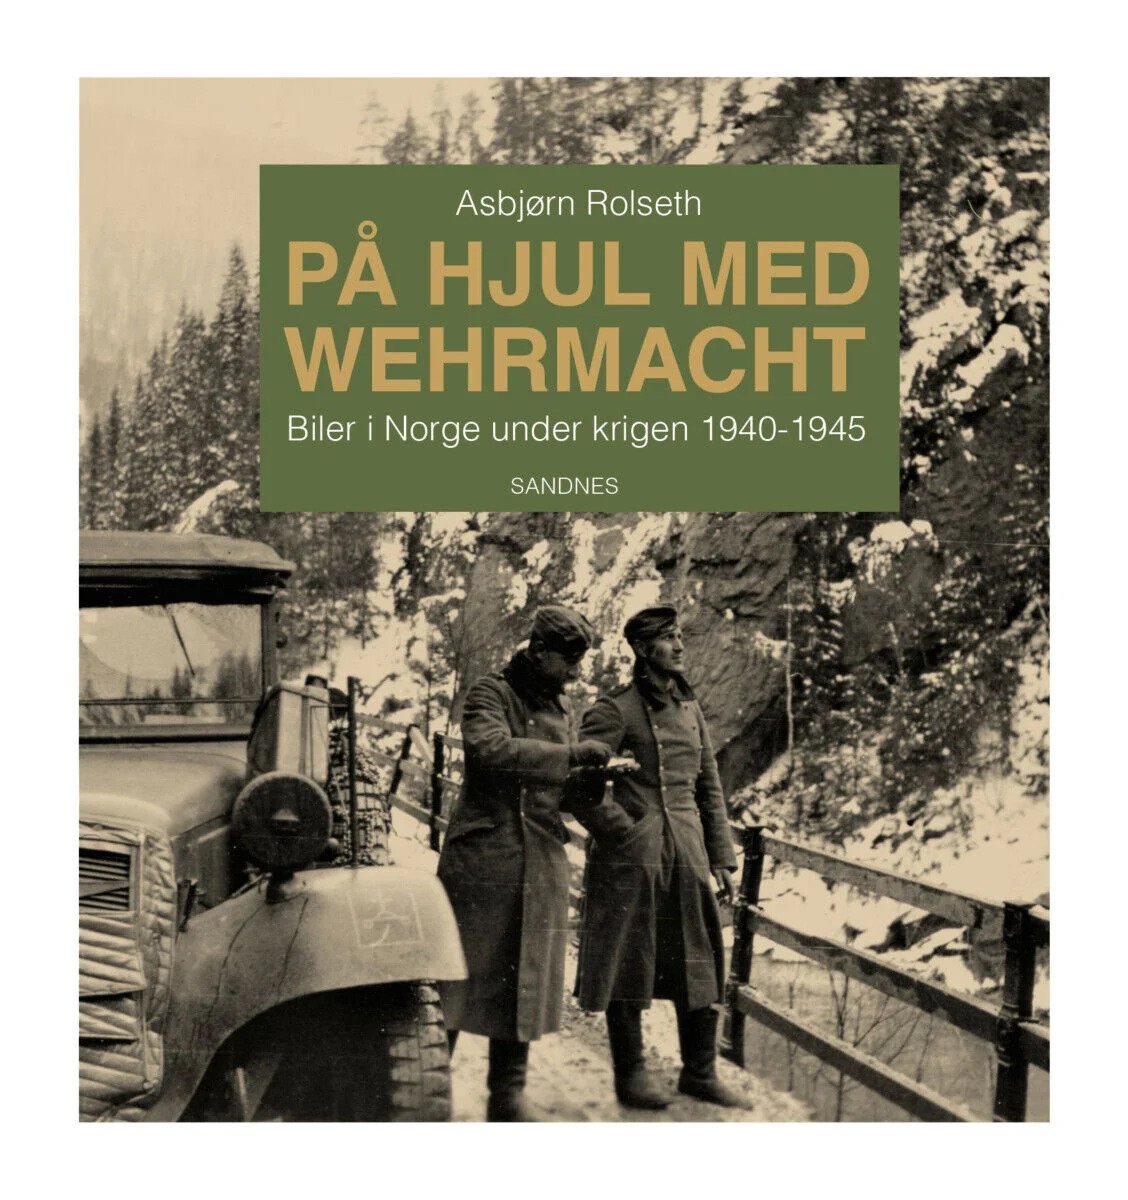 På hjul med Wehrmacht: Fantastisk ny bok om biler i Norge under krigen